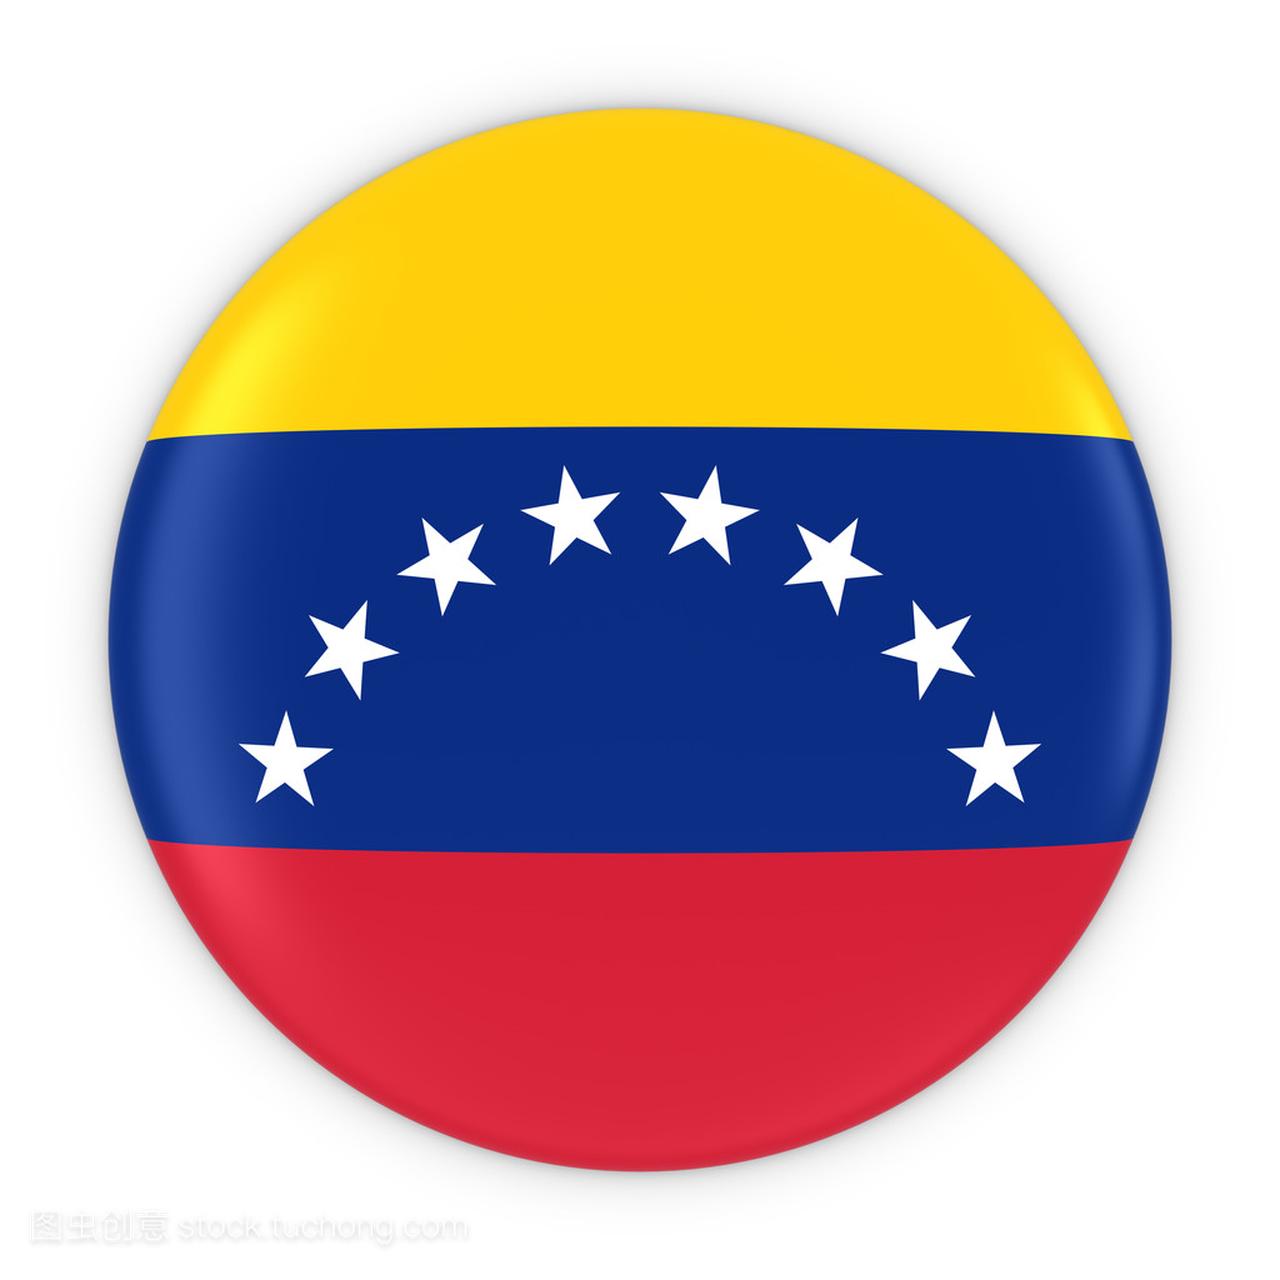 委内瑞拉国旗按钮-委内瑞拉国旗徽章 3d 图